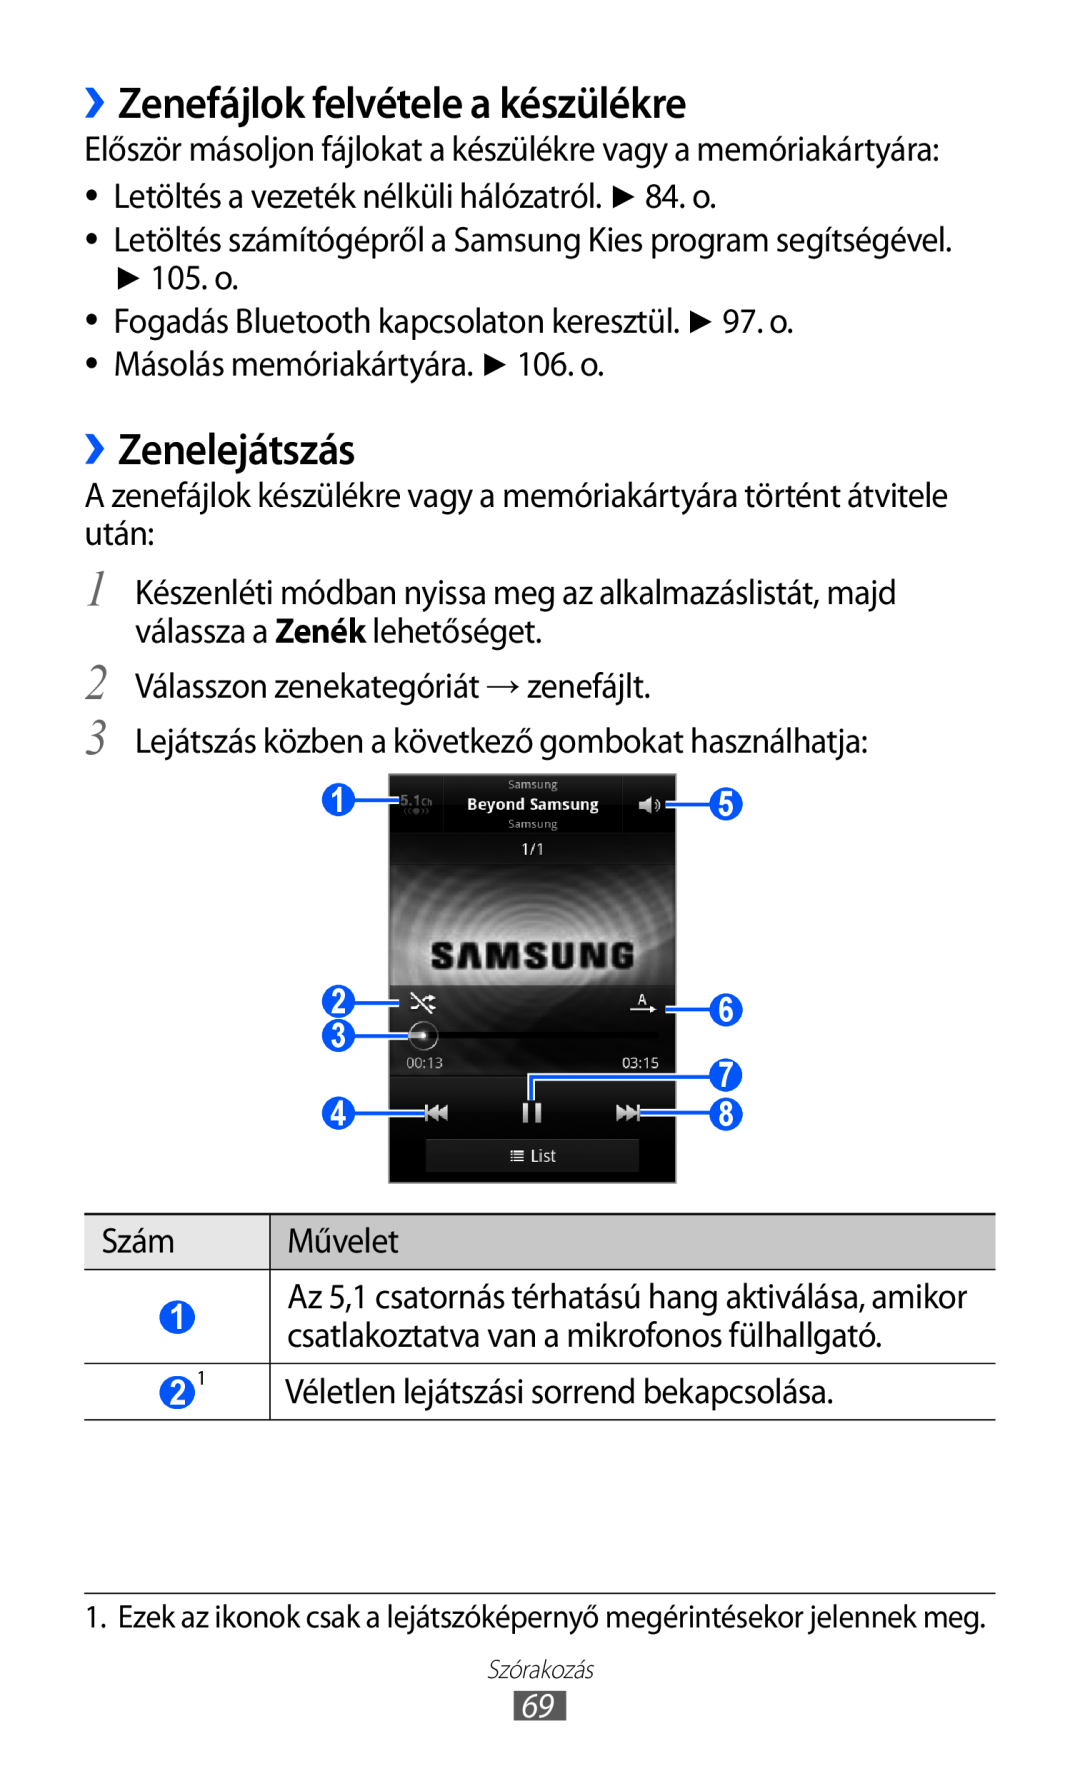 Samsung GT-S6500ZYDTMH, GT-S6500RWAVGR, GT-S6500XKAVGR, GT-S6500ZYADBT ››Zenefájlok felvétele a készülékre, ››Zenelejátszás 